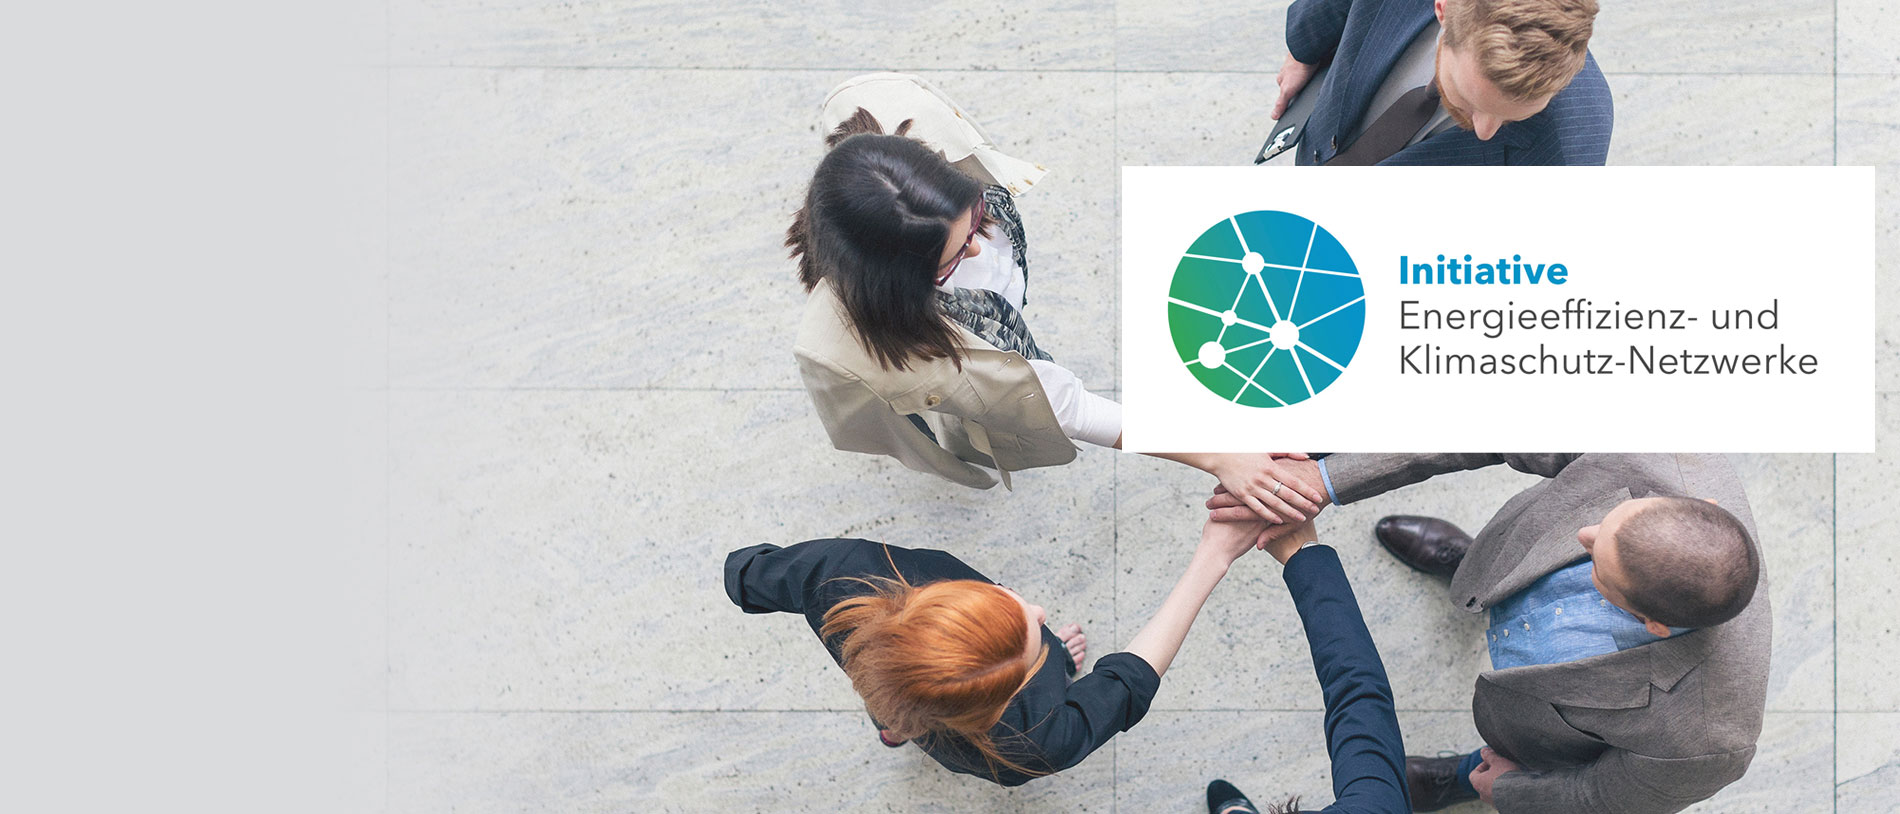 Gruppe von Geschäftsleuten beim Händeschütteln; darüber: Logo Initiative Energieeffizienz- und Klimaschutz-Netzwerke